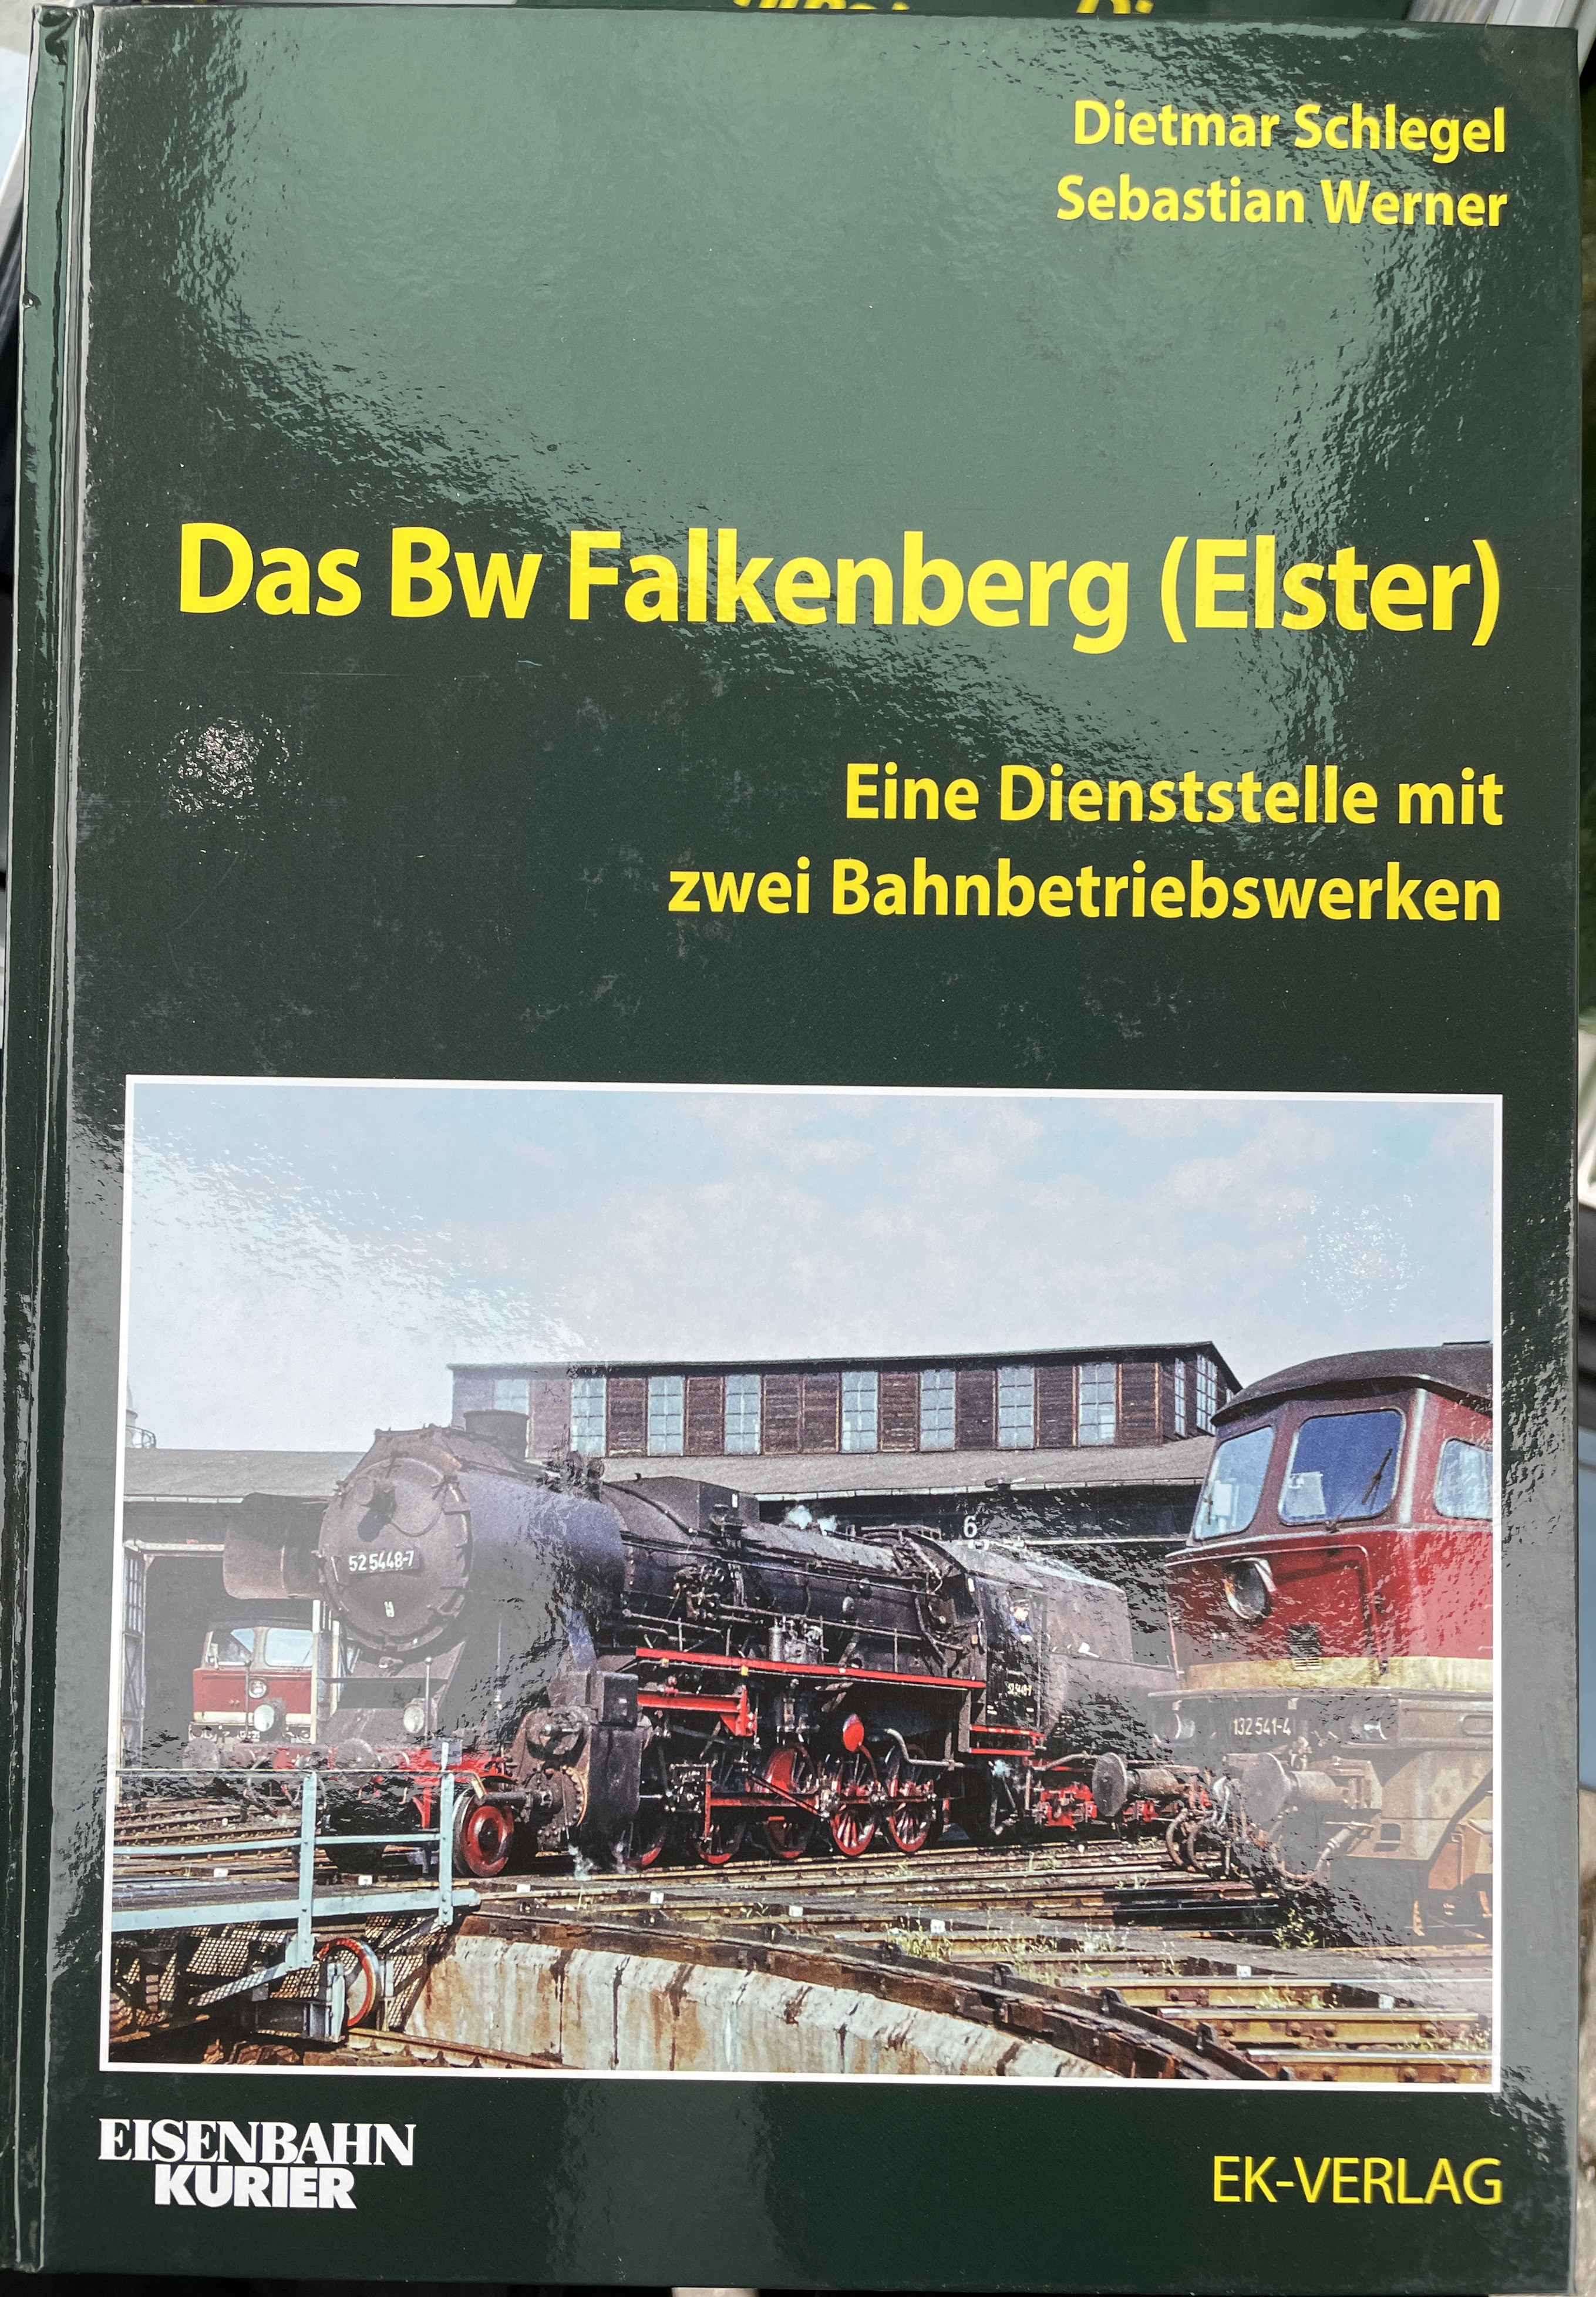 Das Bw Falkenberg (Elster) von Dietmar Schlegel und Sebastian Werner, EK-Verlag